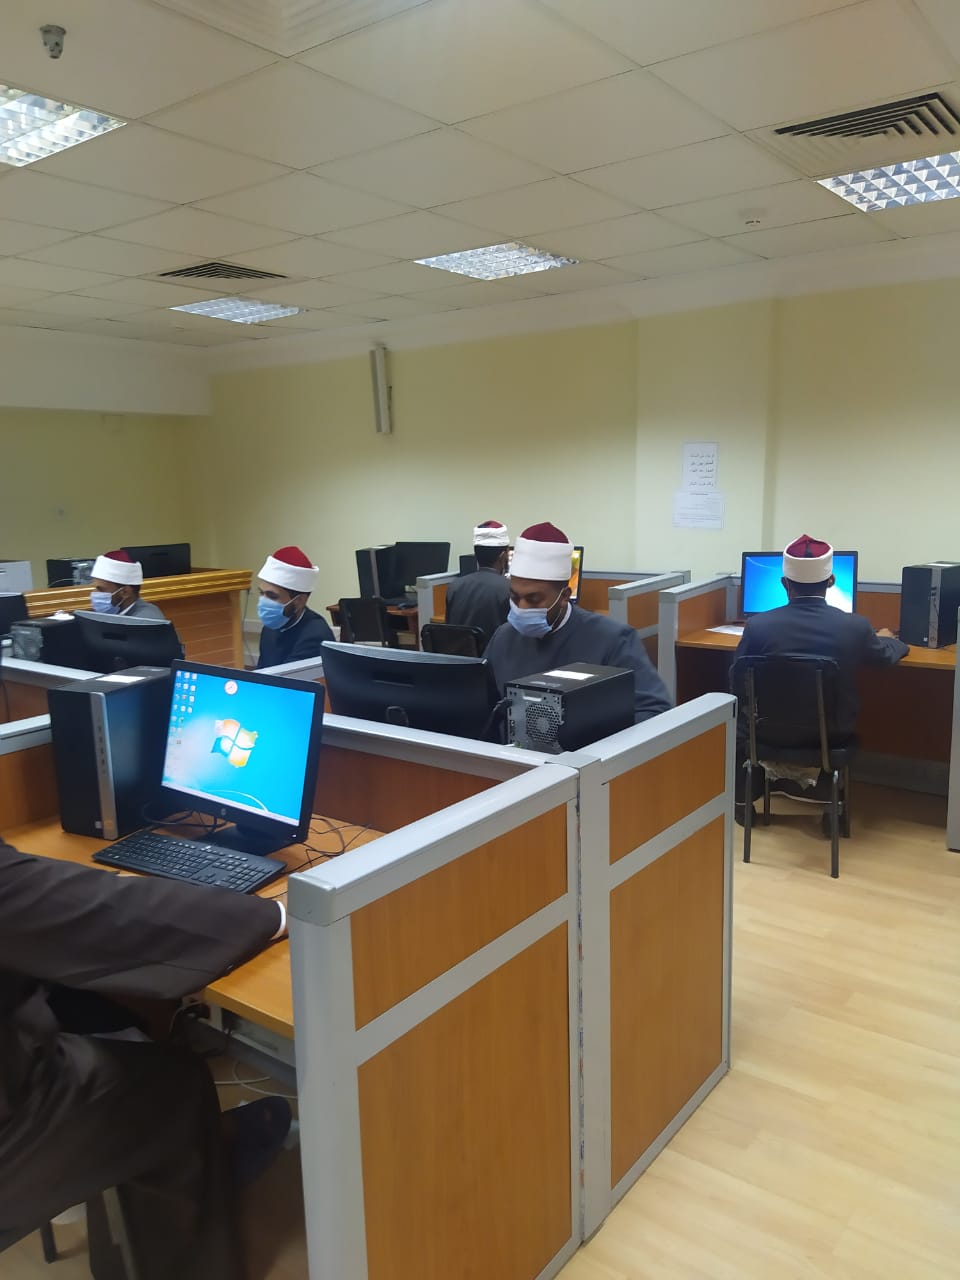 أكاديمية الأوقاف الدولية أثناء انطلاق دورة الحاسب الآلى للأئمة والوعاظ